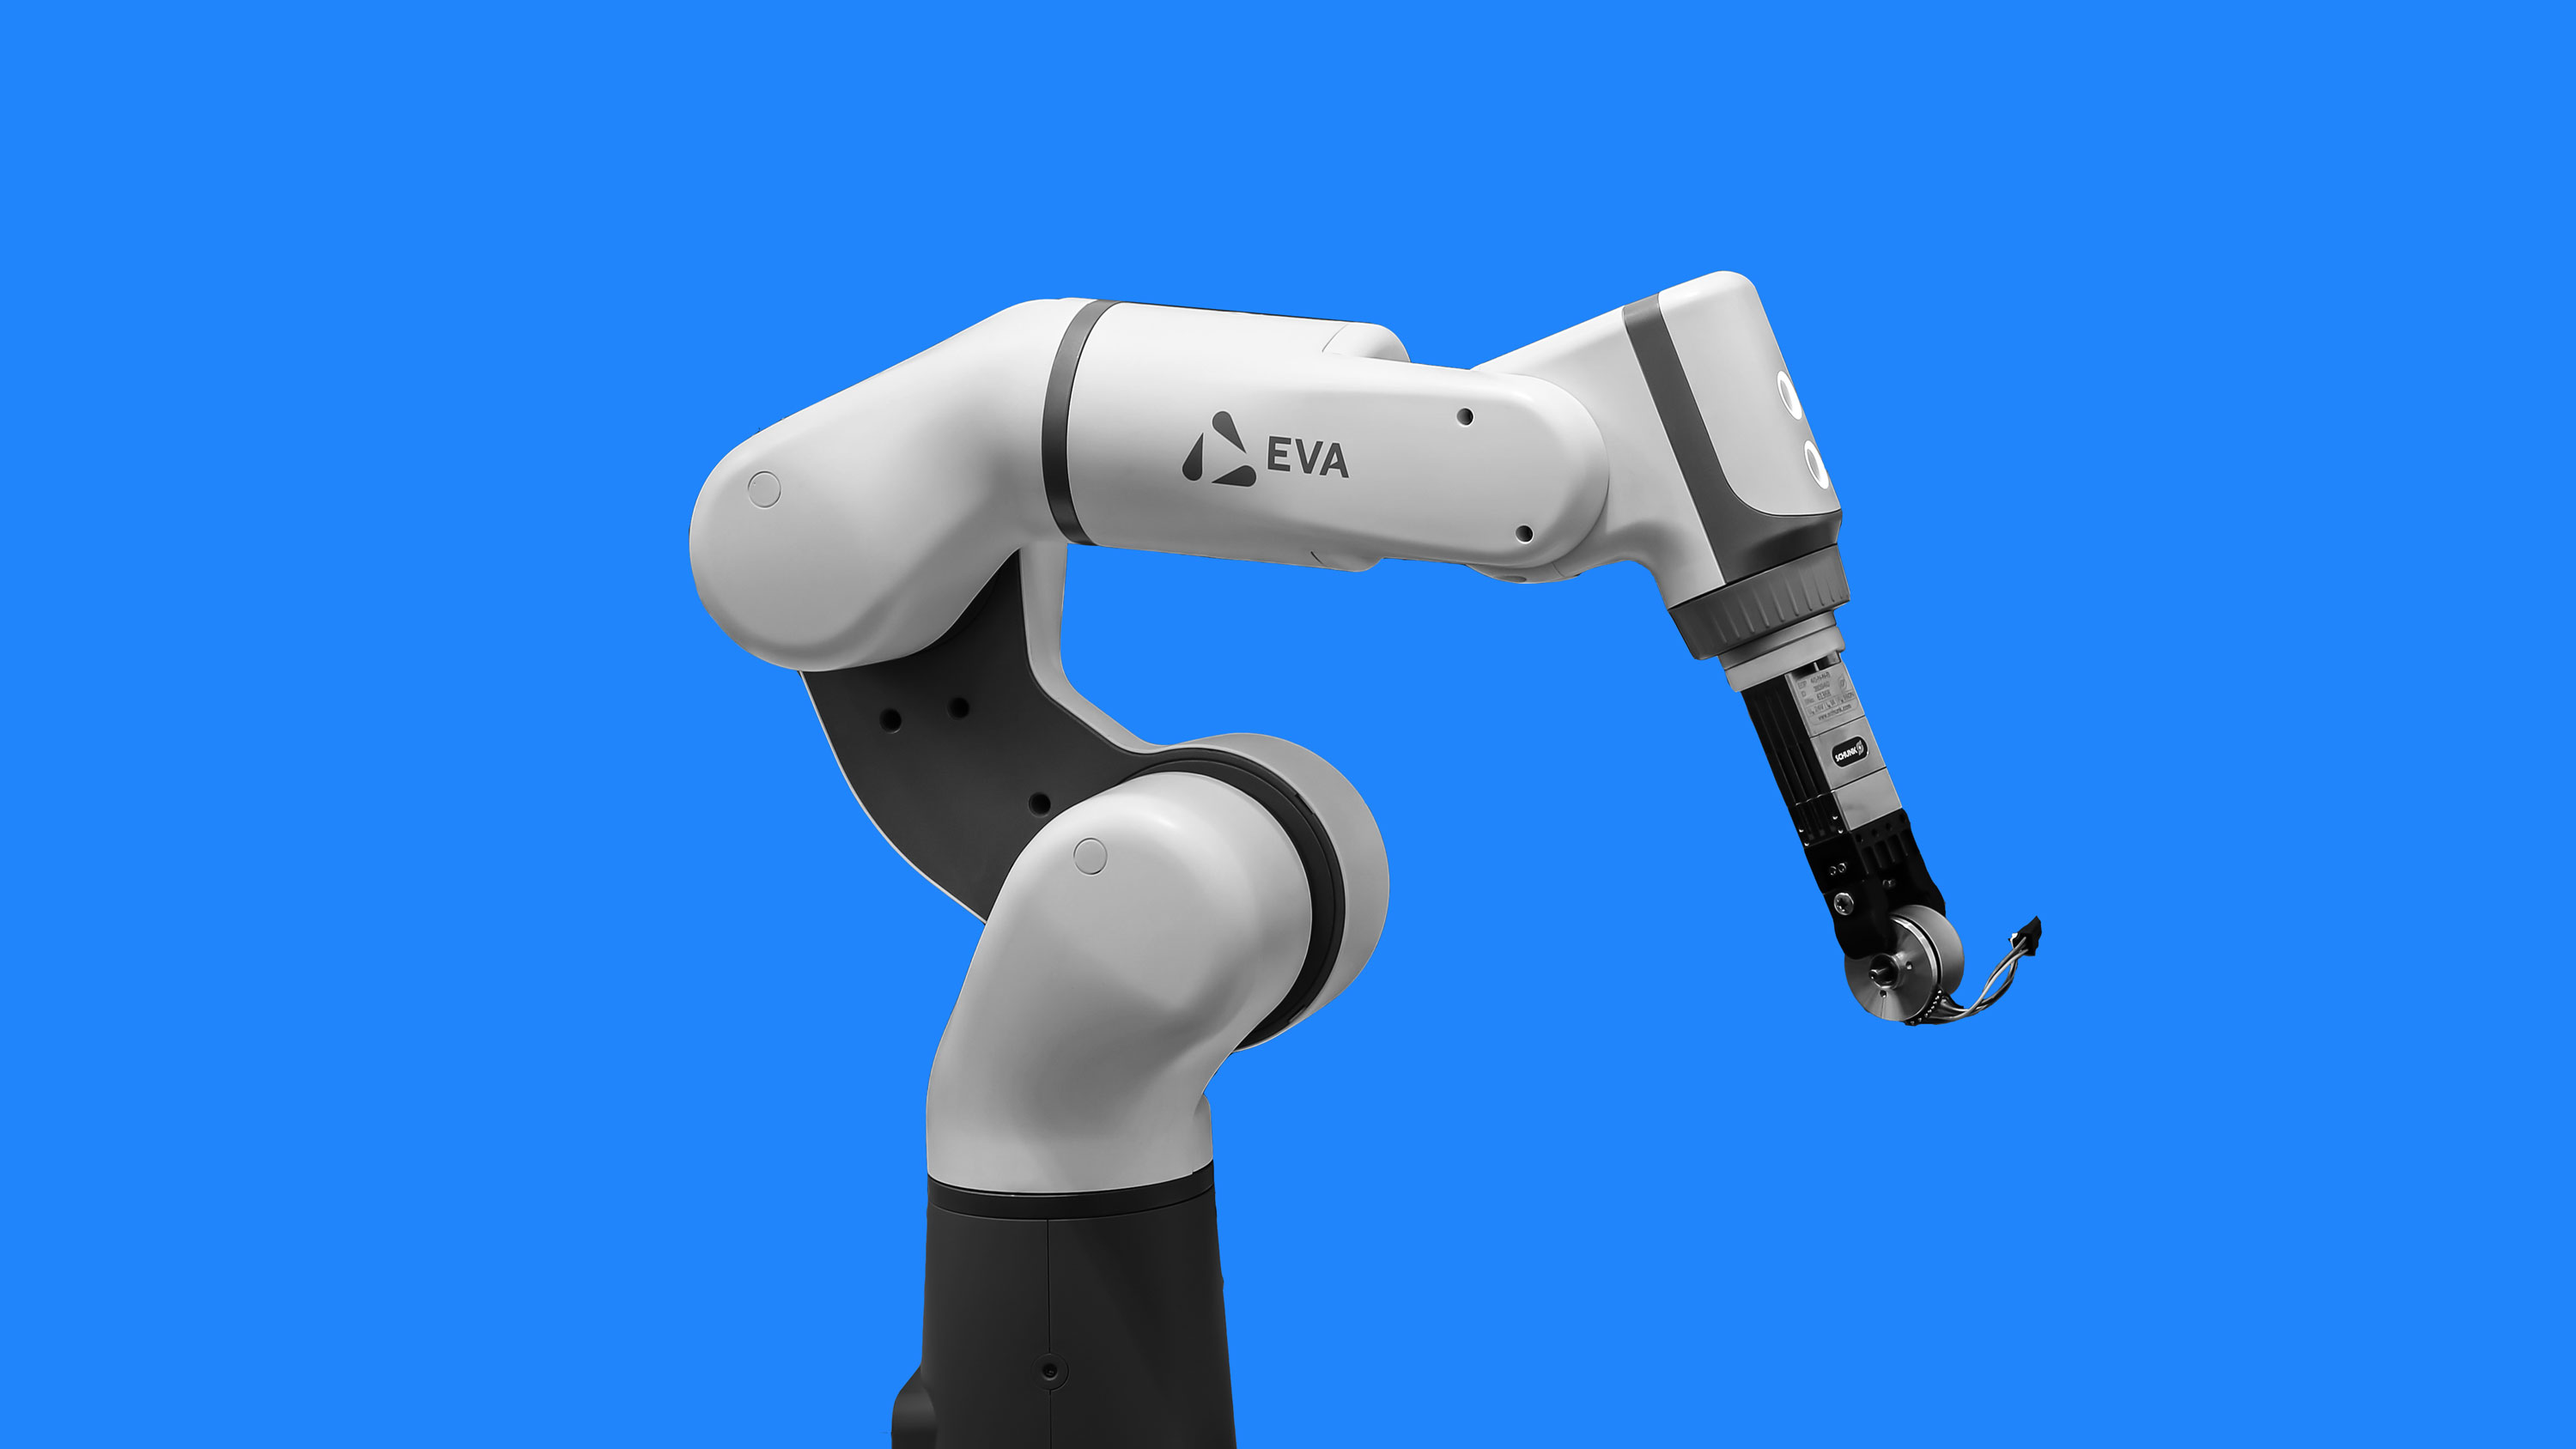 A photo of the Eva robot arm